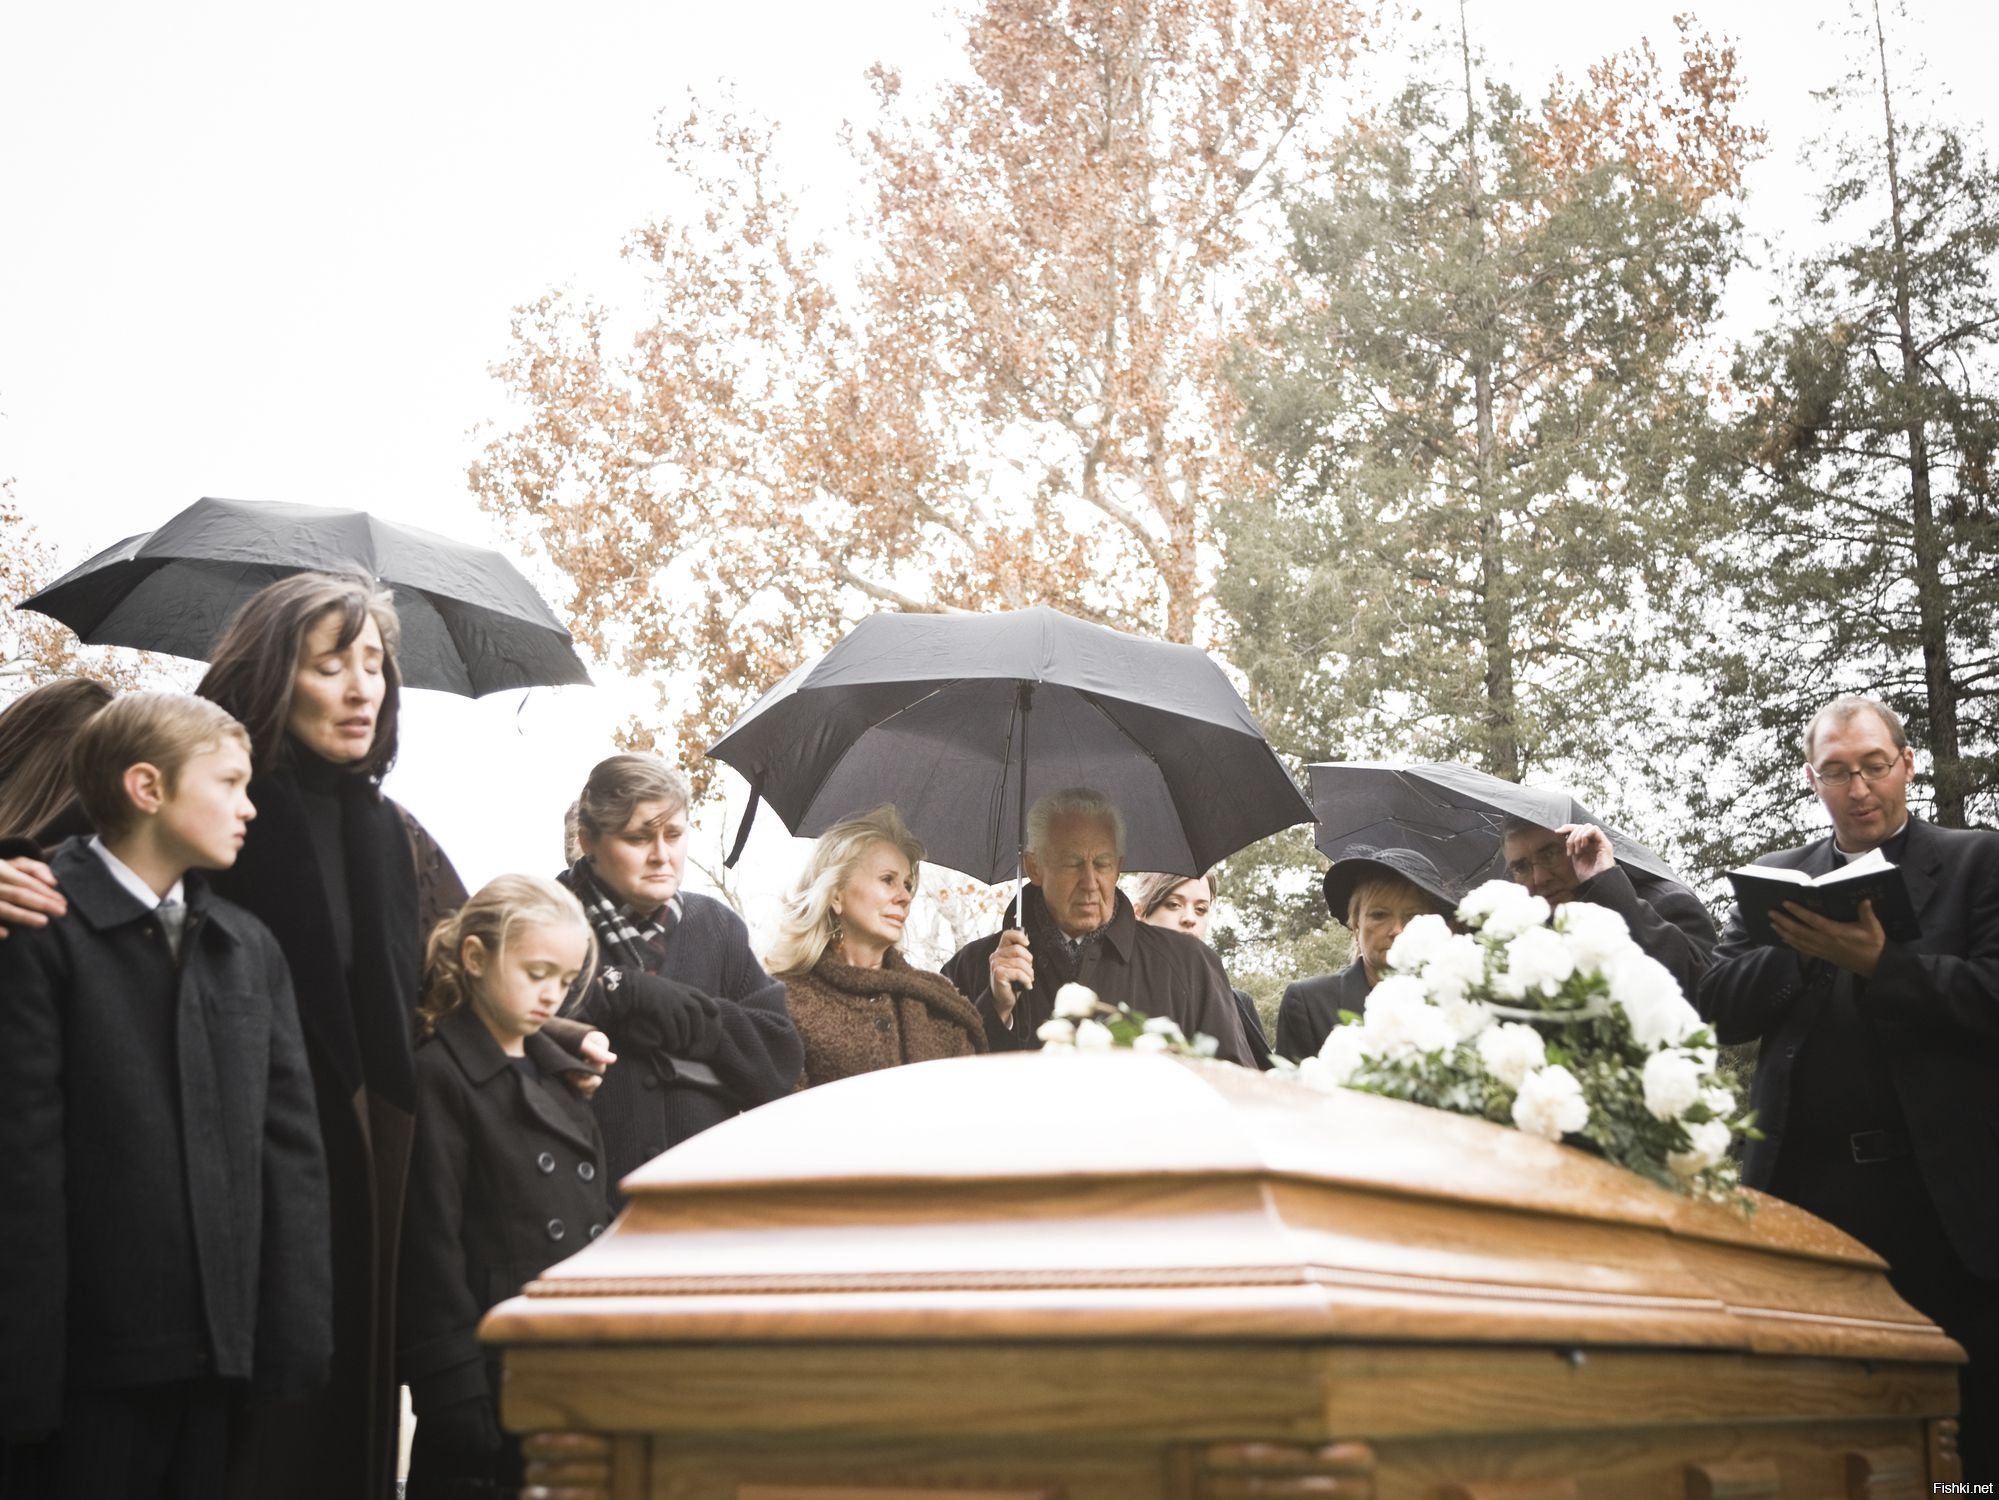 Прощание близко. Родственники на похоронах.